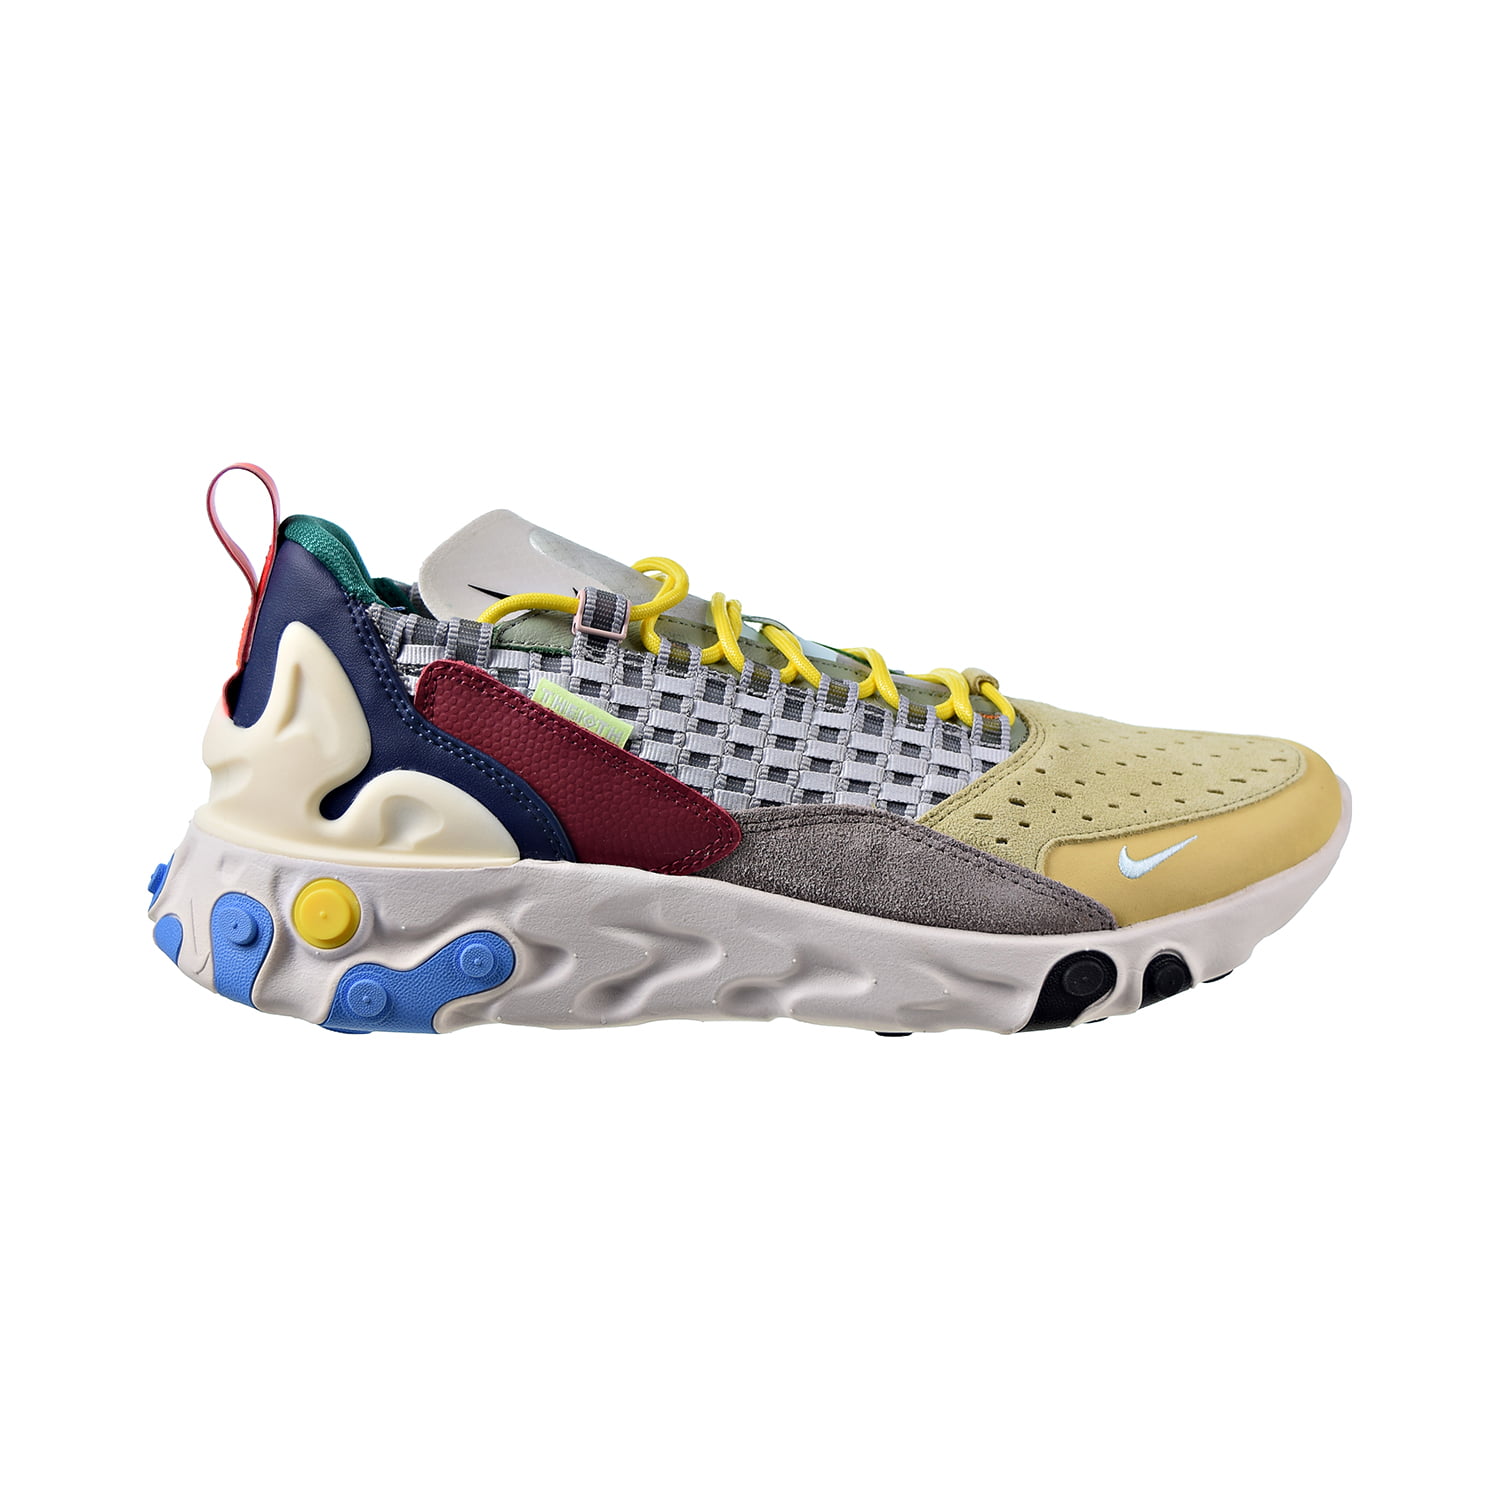 Nike React Sertu Men's Shoes Wolf Grey-Teal Tint-Pumice at5301-001 